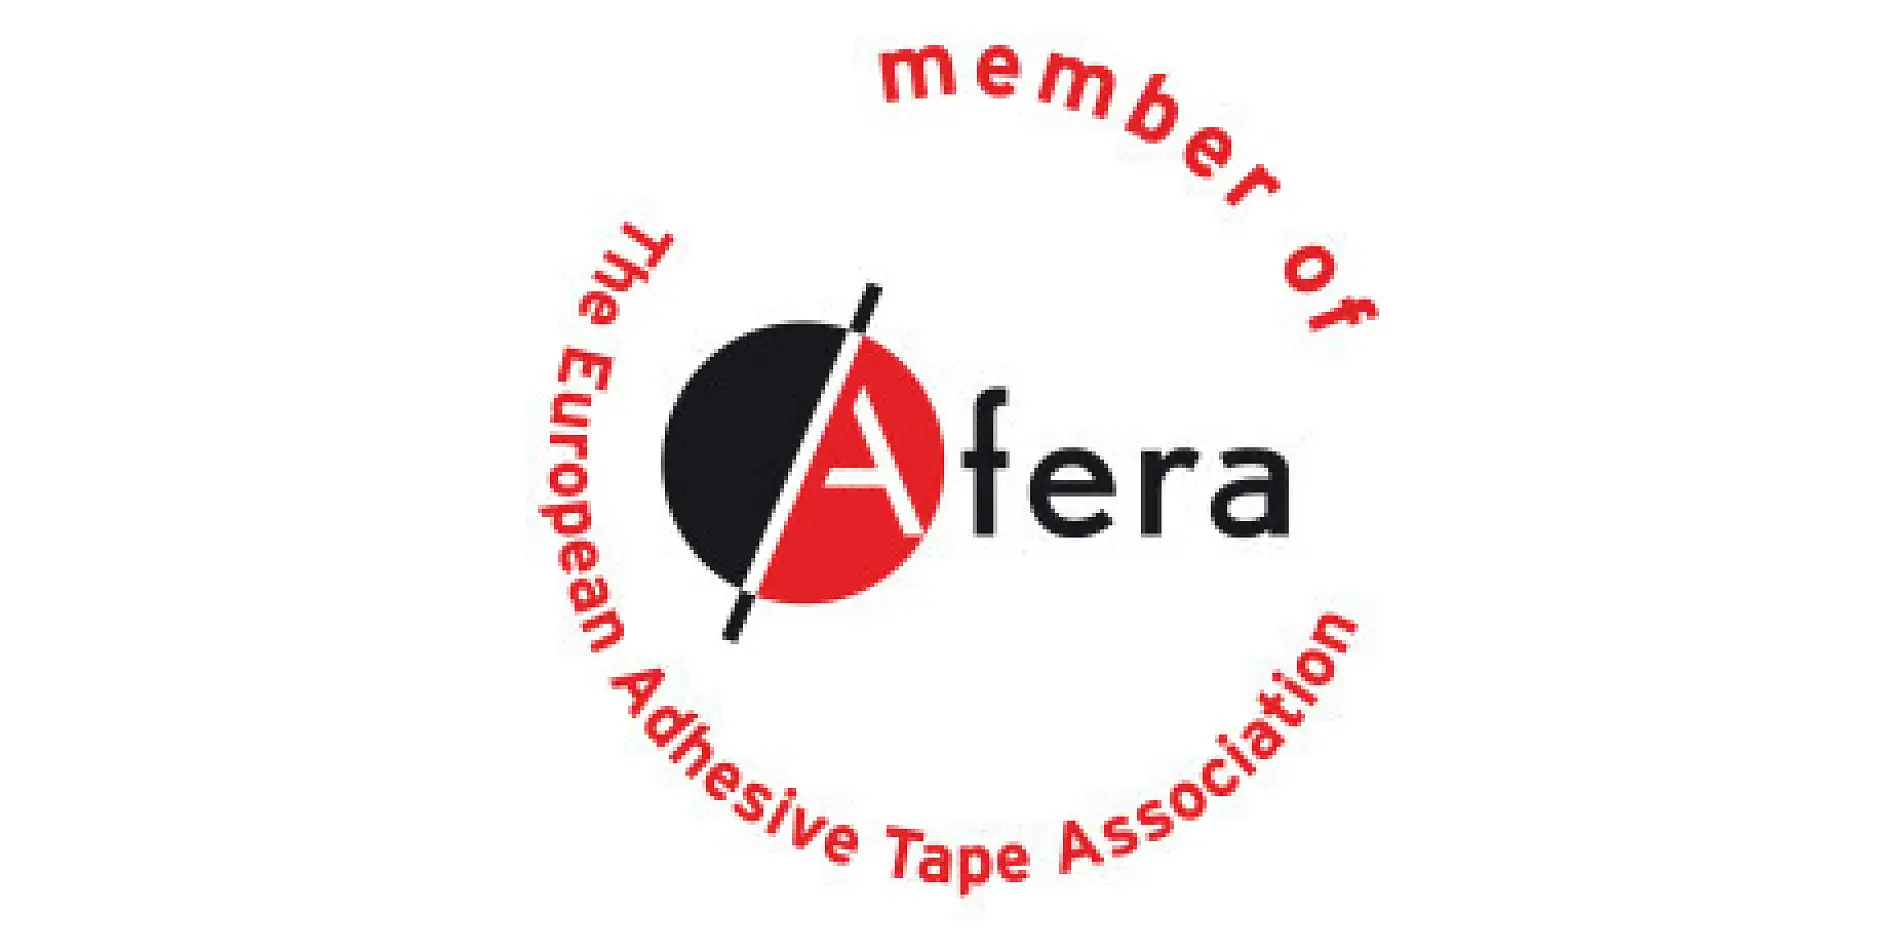 tesa er medlem af Afera - Det europæiske tapeforbund. Medlemskabet omfatter producenter, leverandører af råmaterialer og maskiner, forarbejdningsvirksomheder (der f.eks. trykker, tilskærer, udstanser og laminerer tape) og nationale tapeorganisationer.